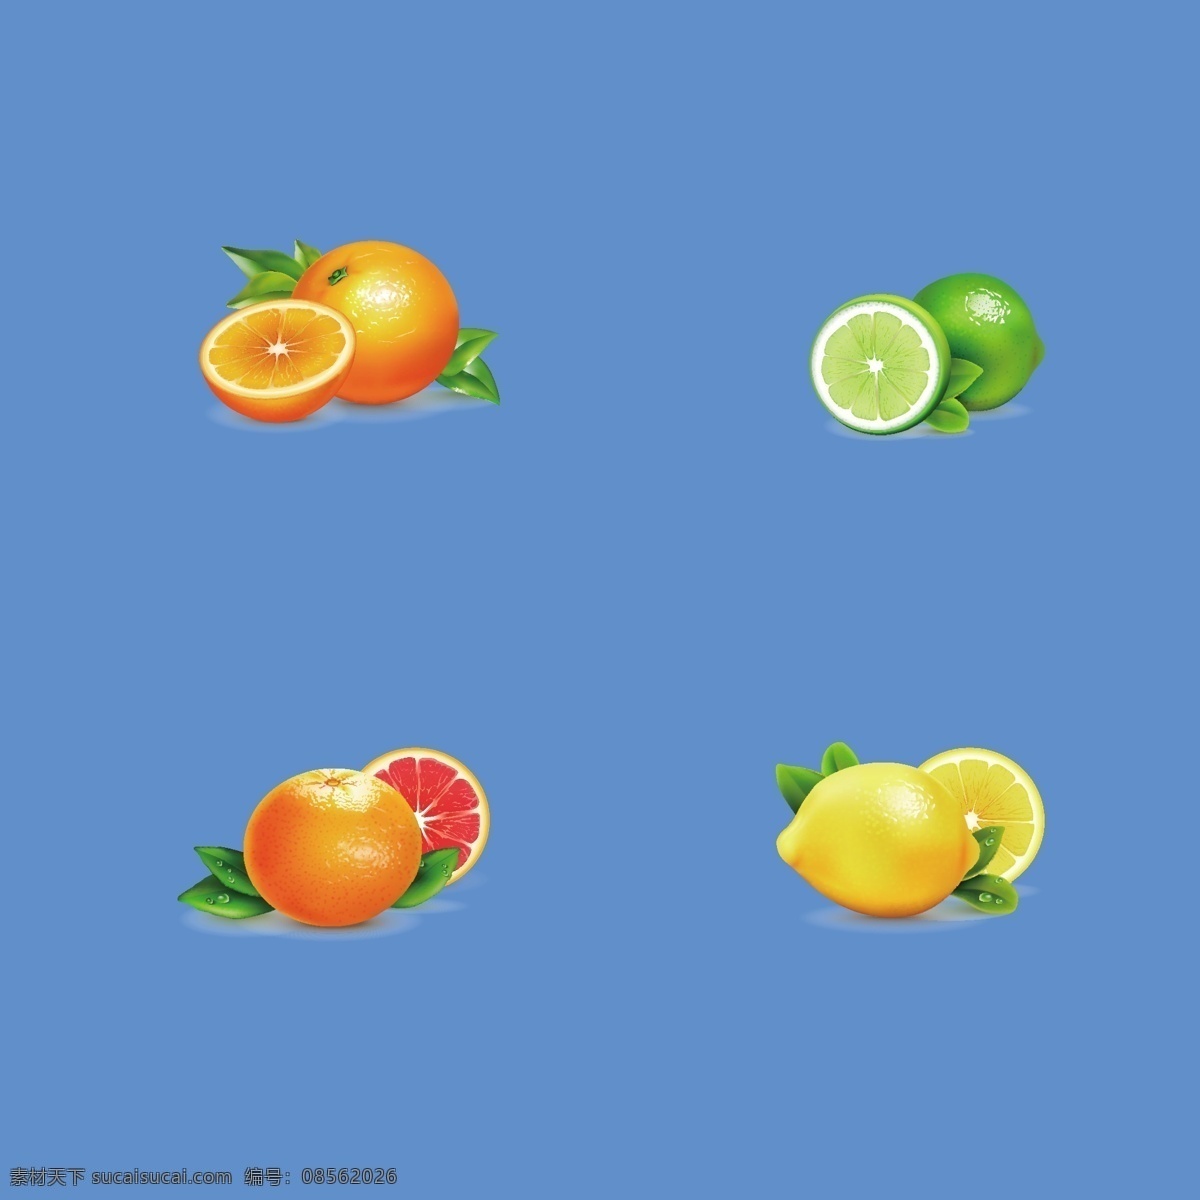 水果 柠檬 橙子 矢量水果 柠檬片 柠檬素材 矢量柠檬 柠檬插画 柠檬切片 红柠檬 绿柠檬 生活用品 标志图标 其他图标